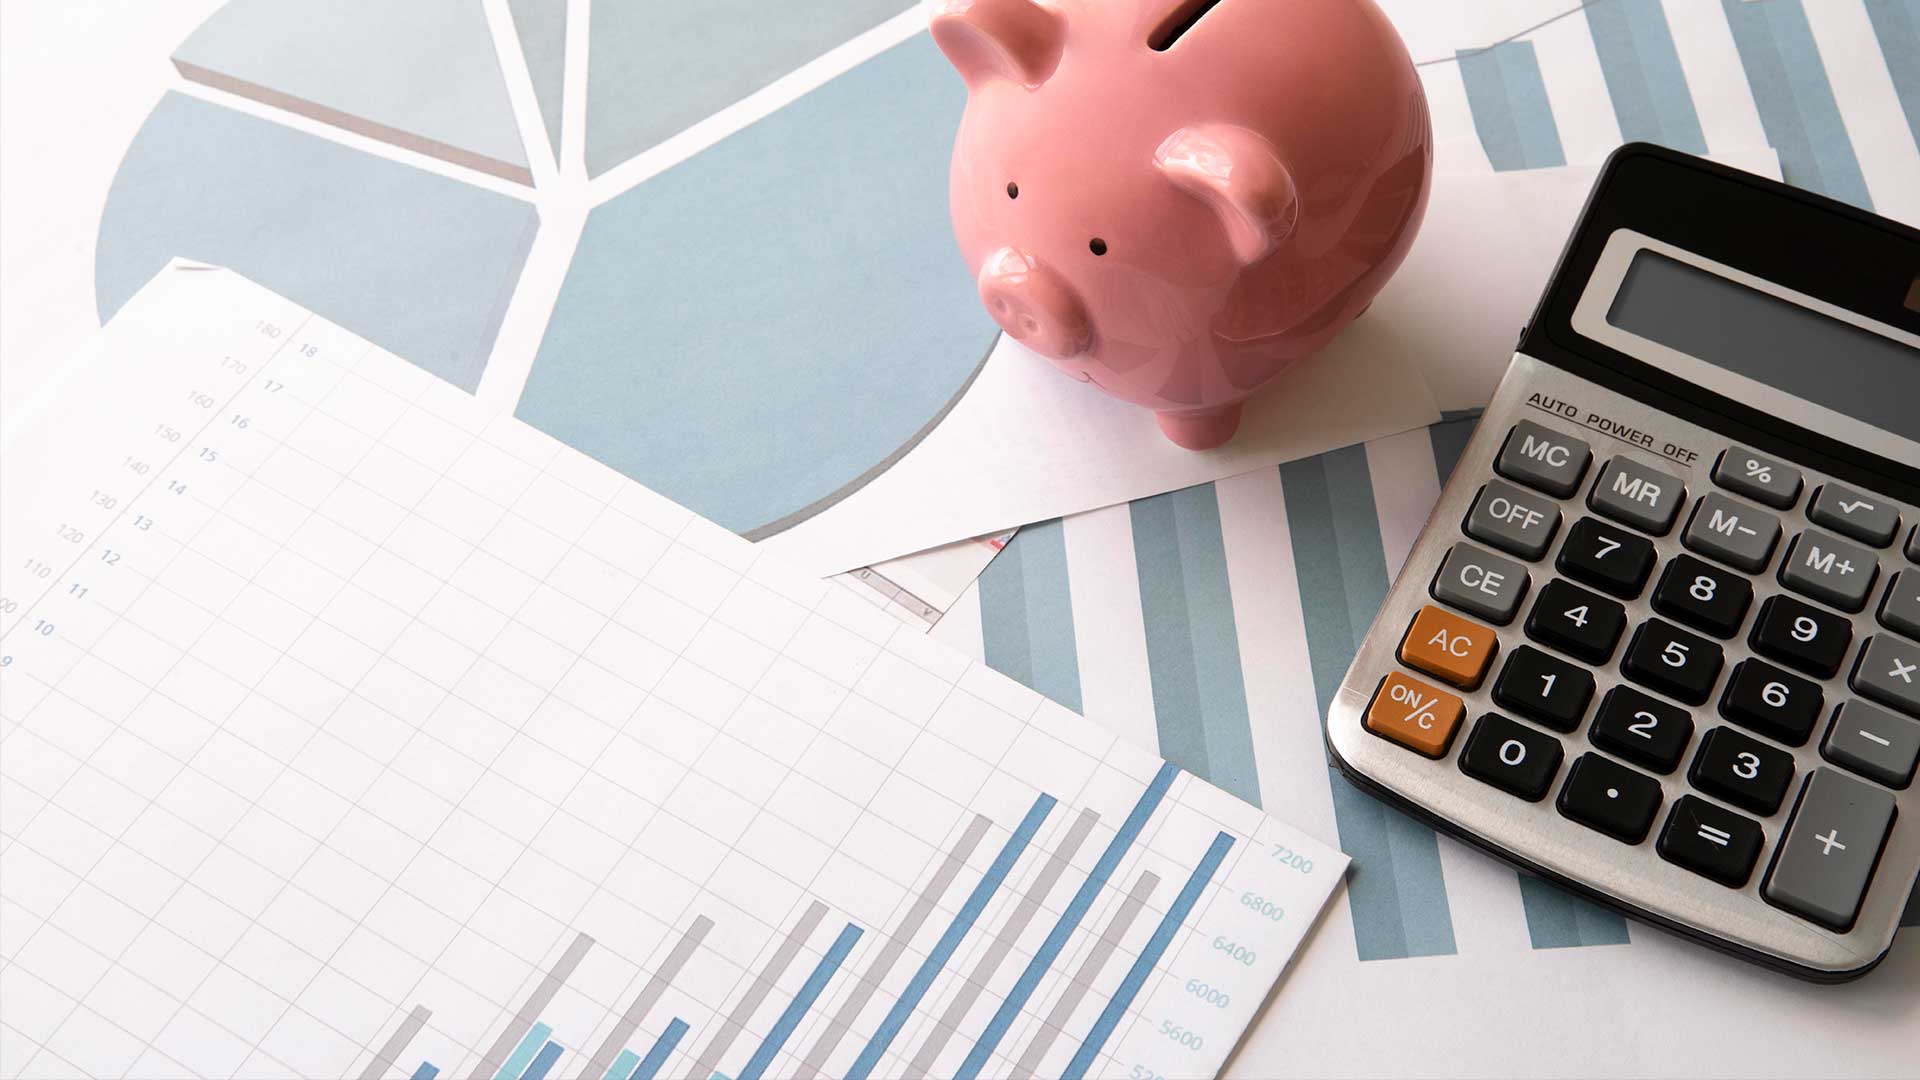 Fotografia com gráficos sobre a evolução dos investimentos, uma calculadora e um mealheiro cor-de-rosa em forma de porco.